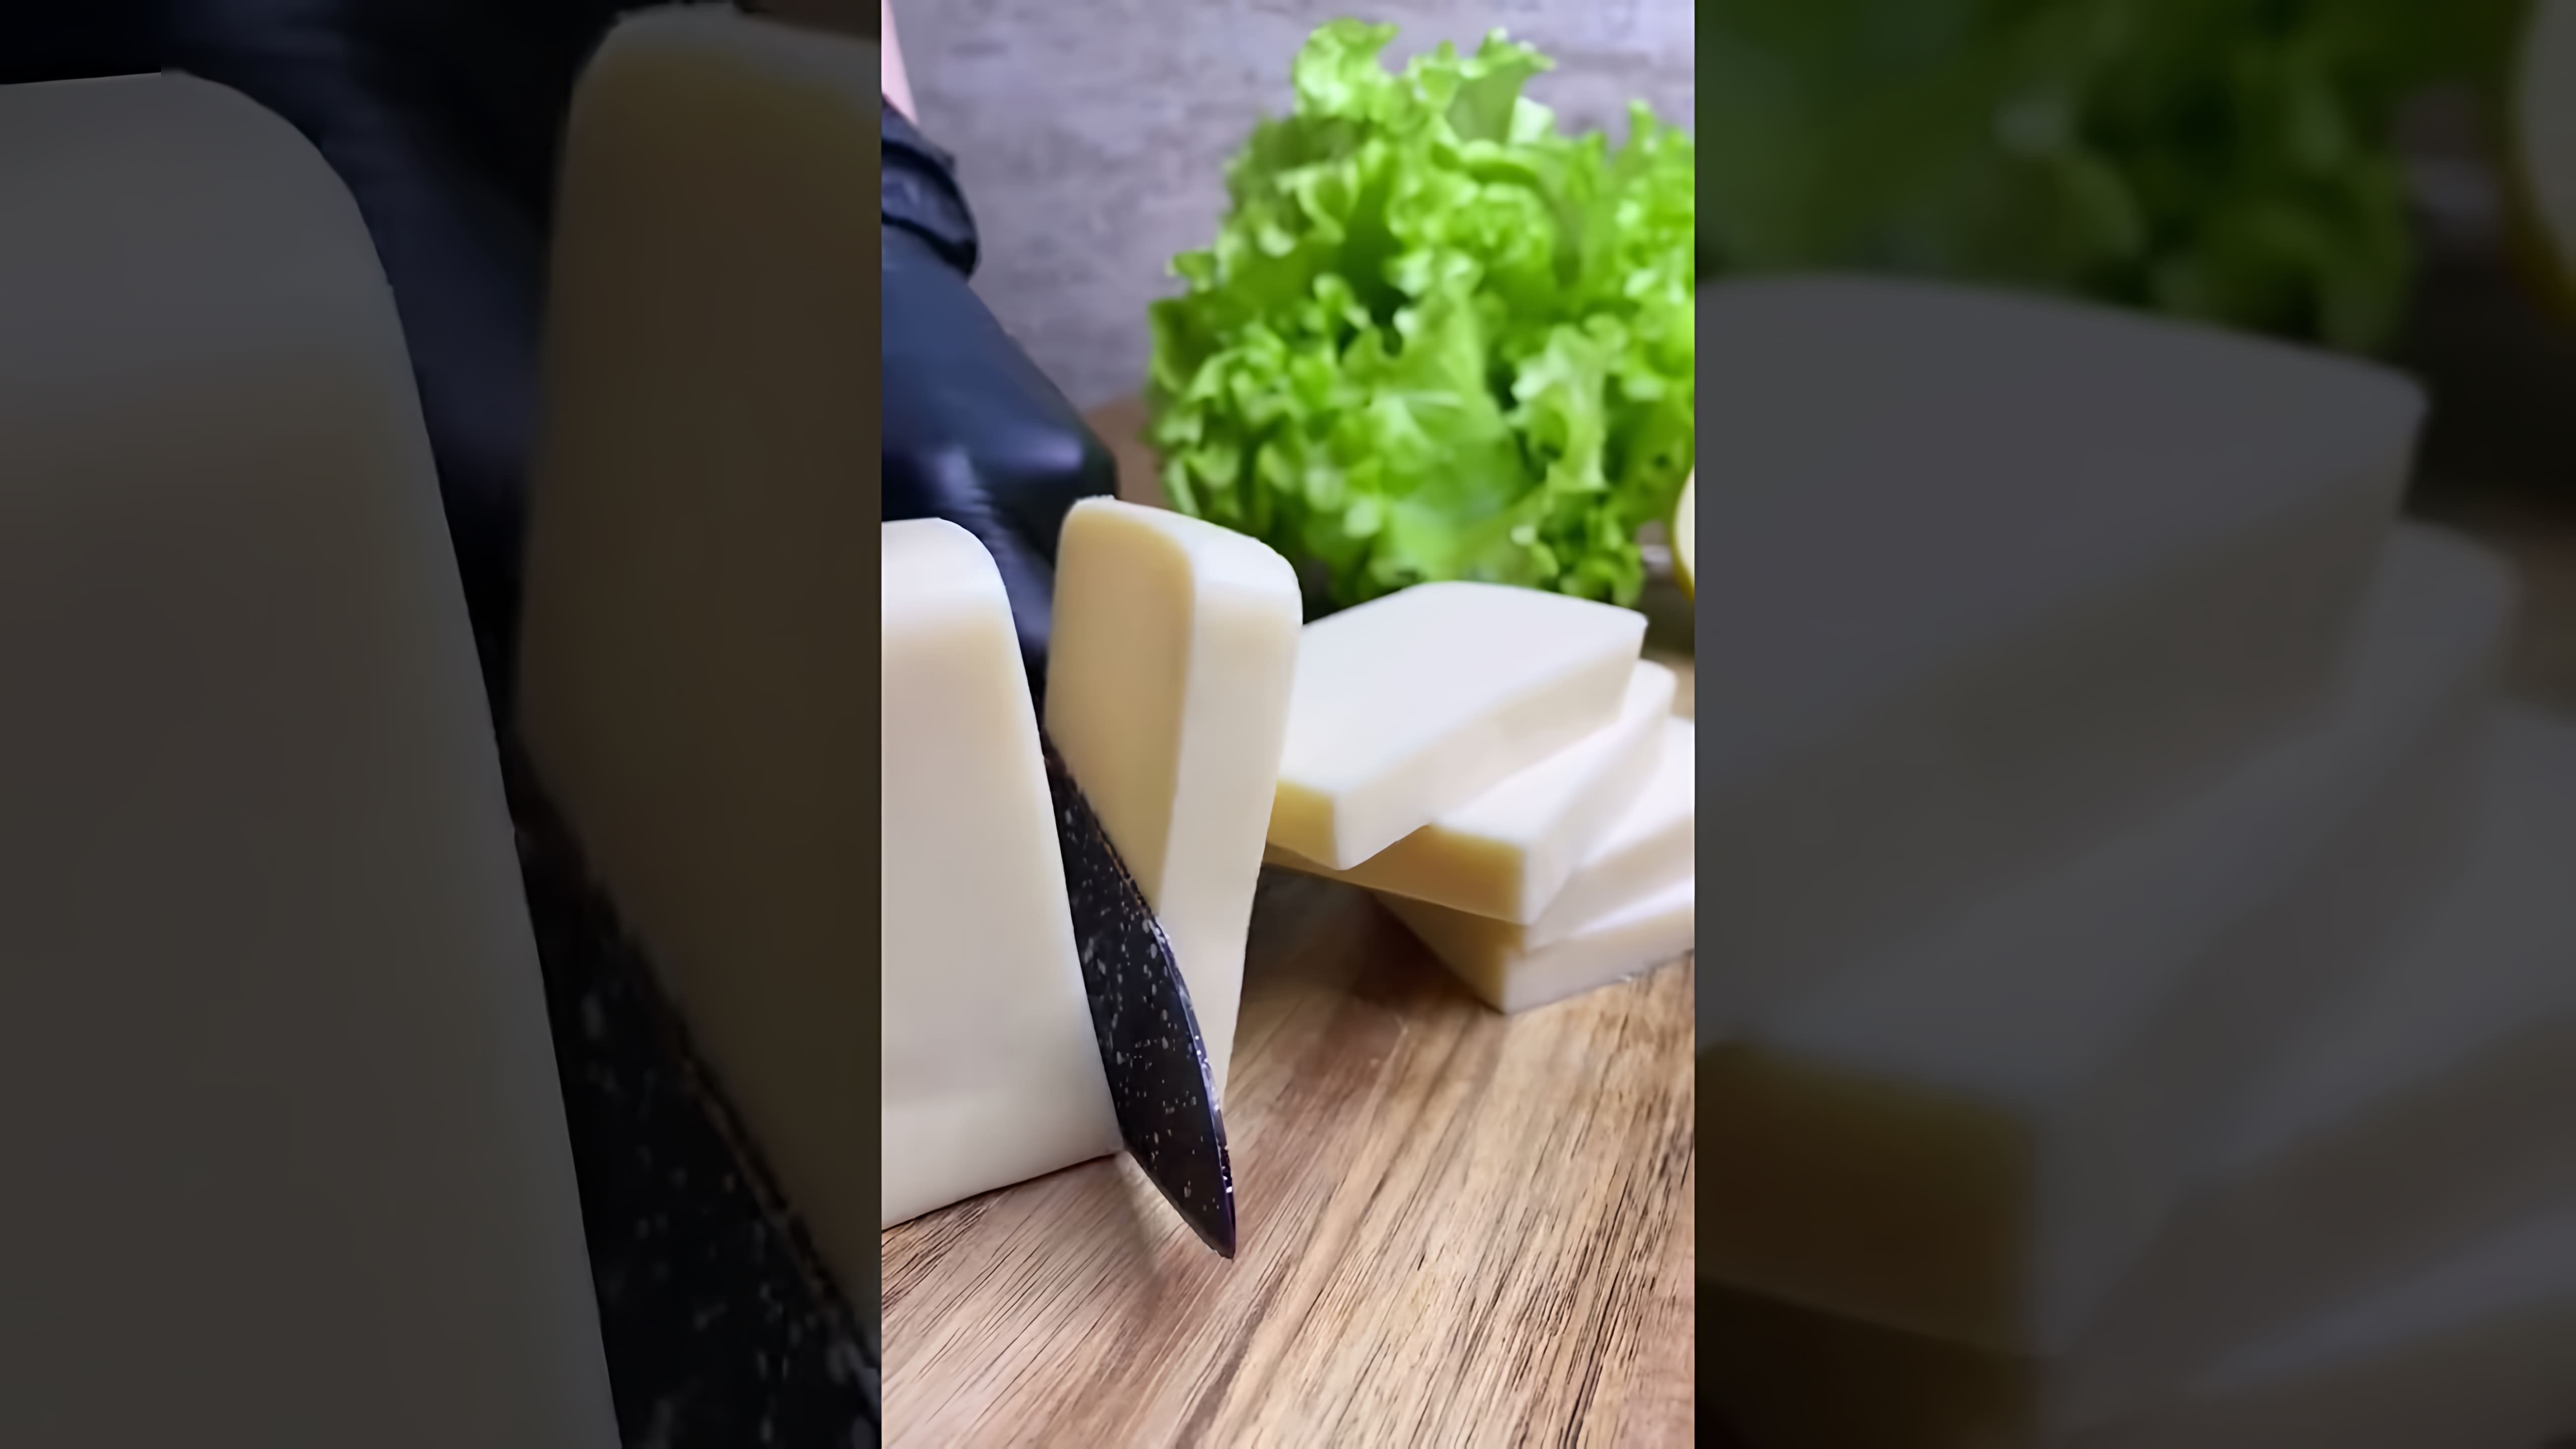 В этом видео демонстрируется рецепт приготовления жареного сыра сулугуни